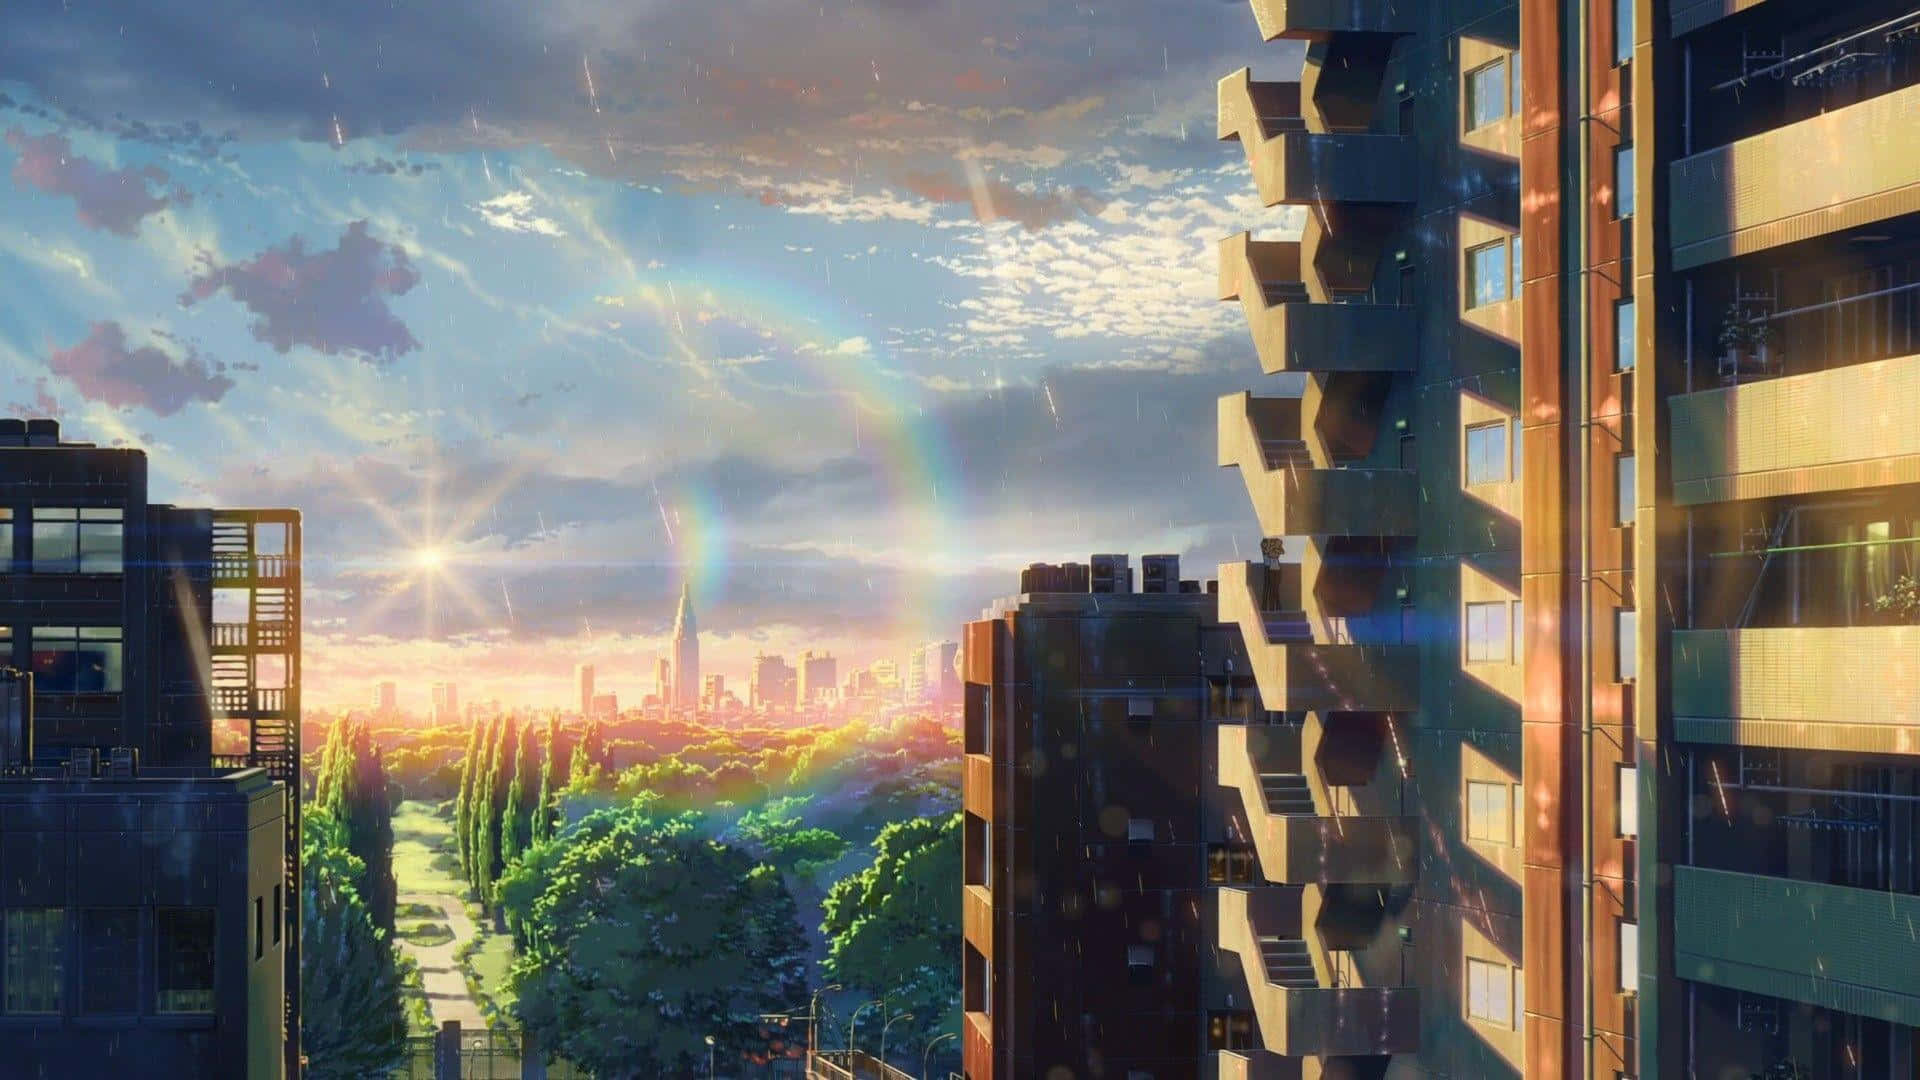 Celebrandoel Maravilloso Mundo Del Director De Anime Makoto Shinkai.